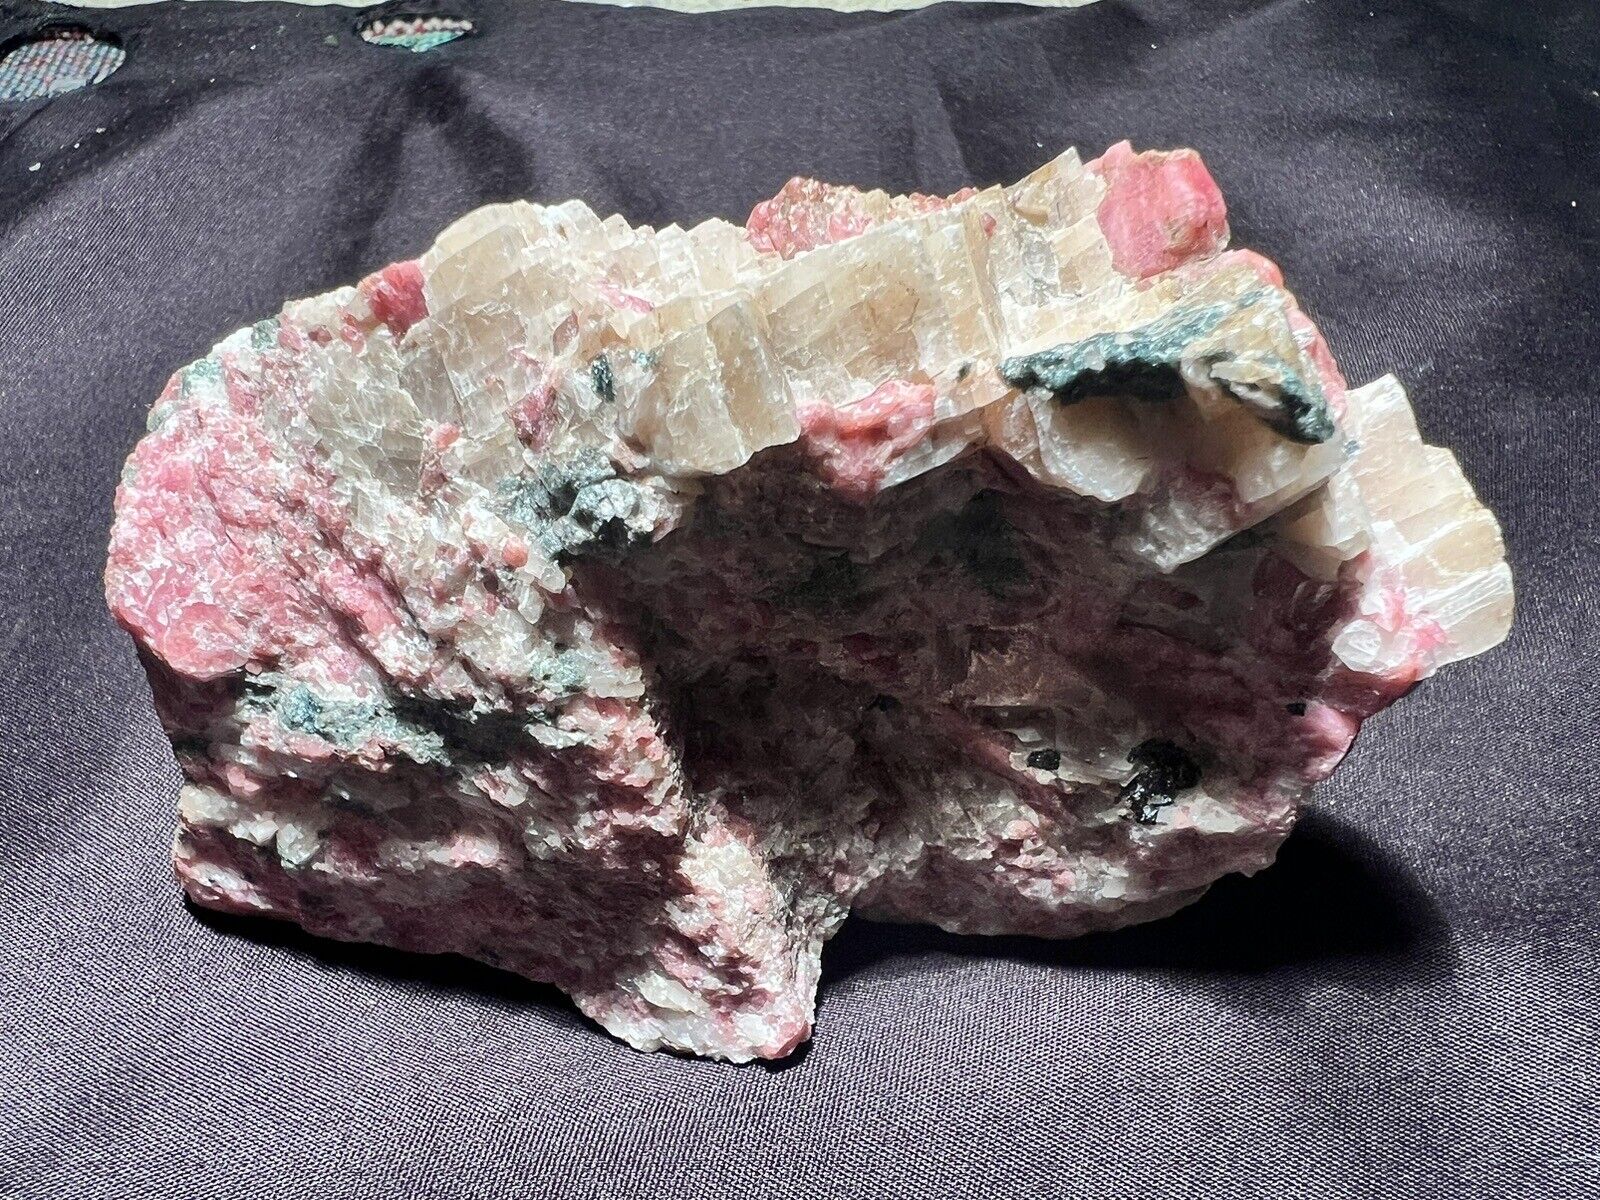 Rhodonite, Calcite, Fluorapatite, Willemite and Franklinite, Franklin, NJ